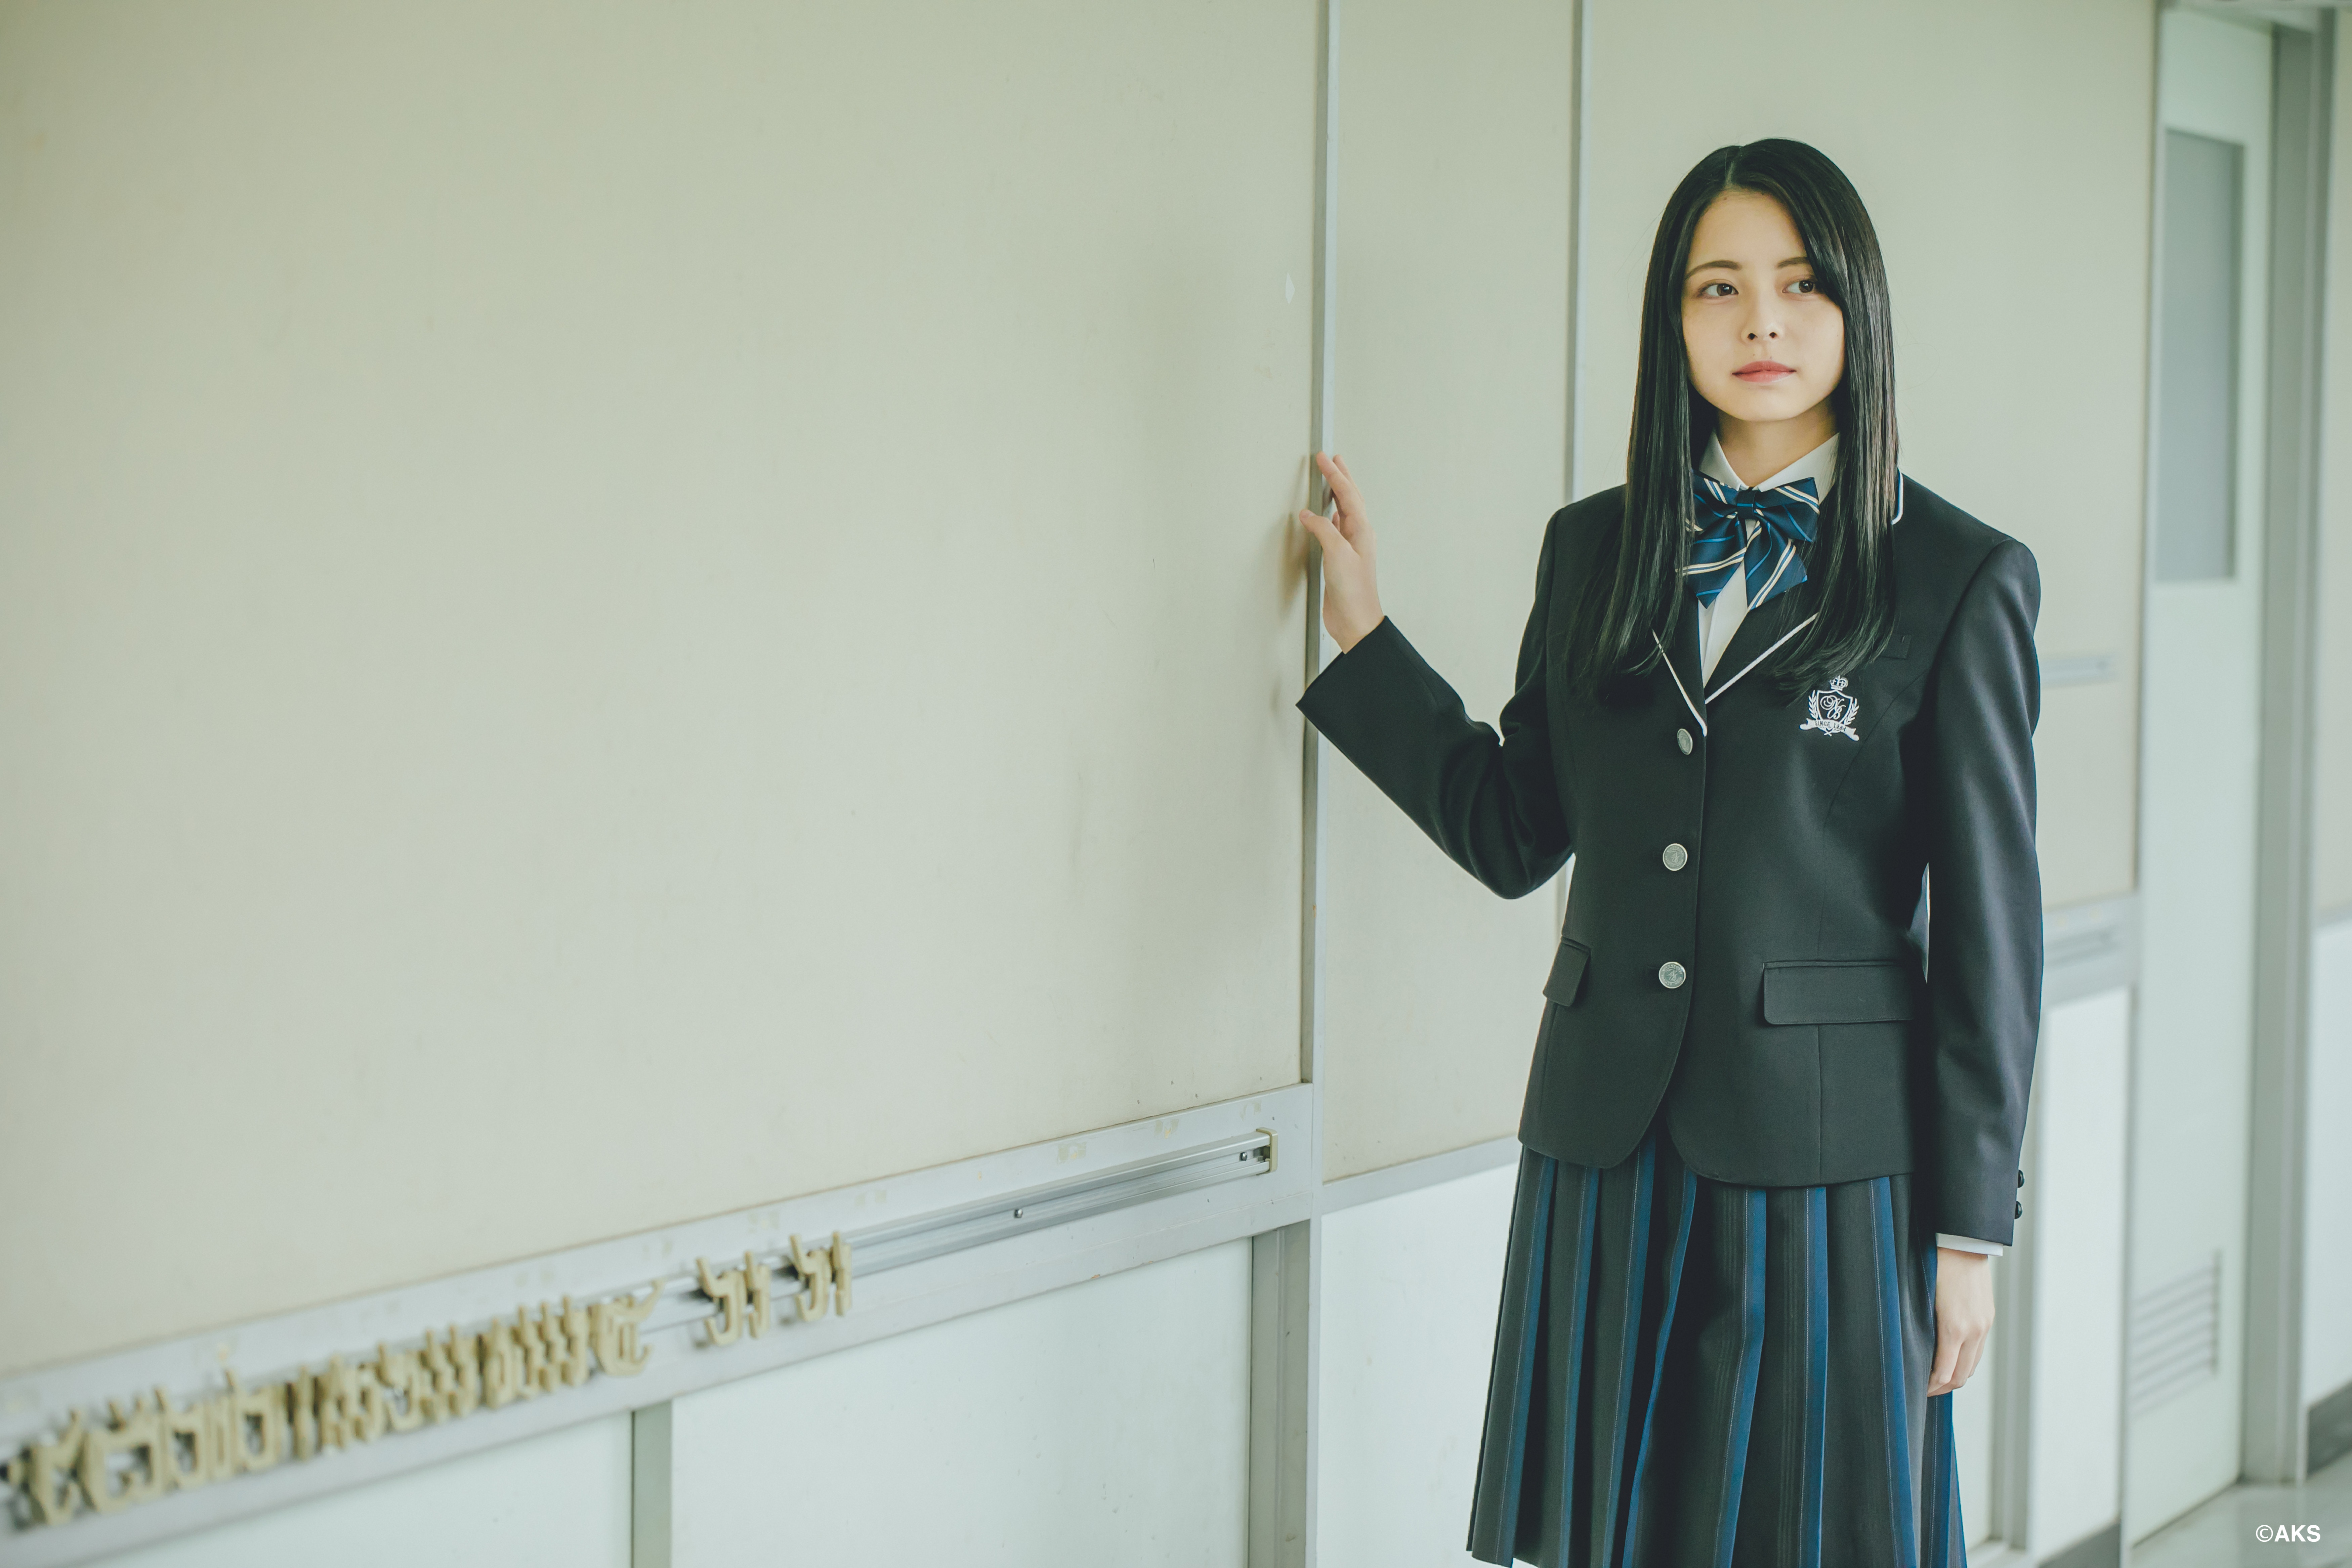 学校制服ブランド「O.C.S.D.」採用 15校目に日本文理高校が決定 